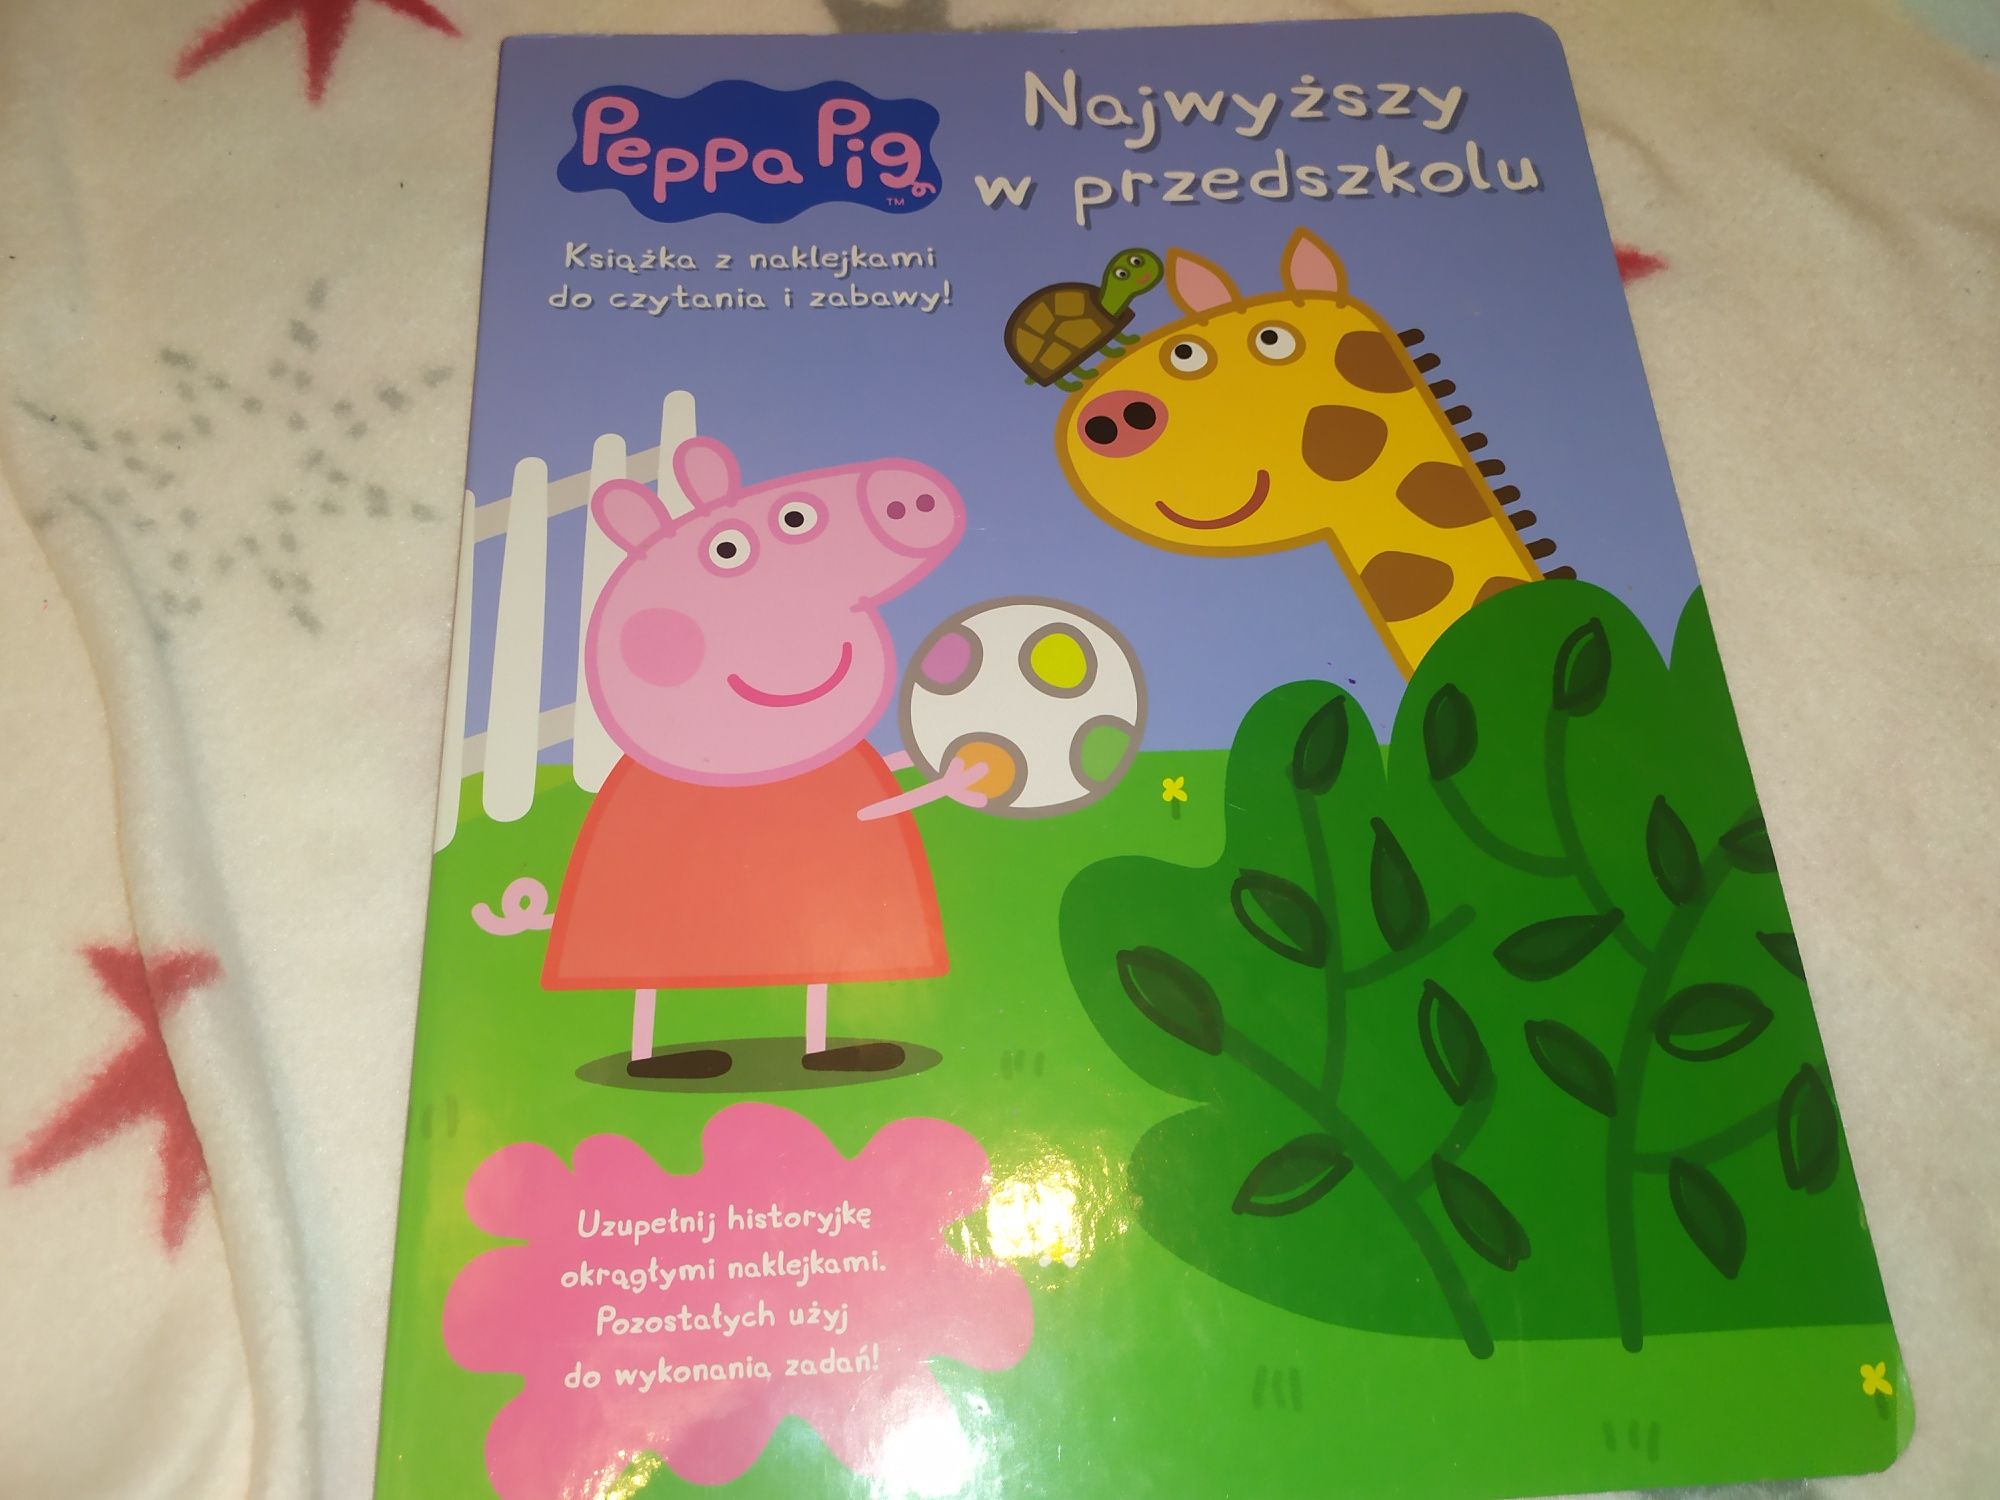 Peppa Pig najwyzszy w przedszkolu książka